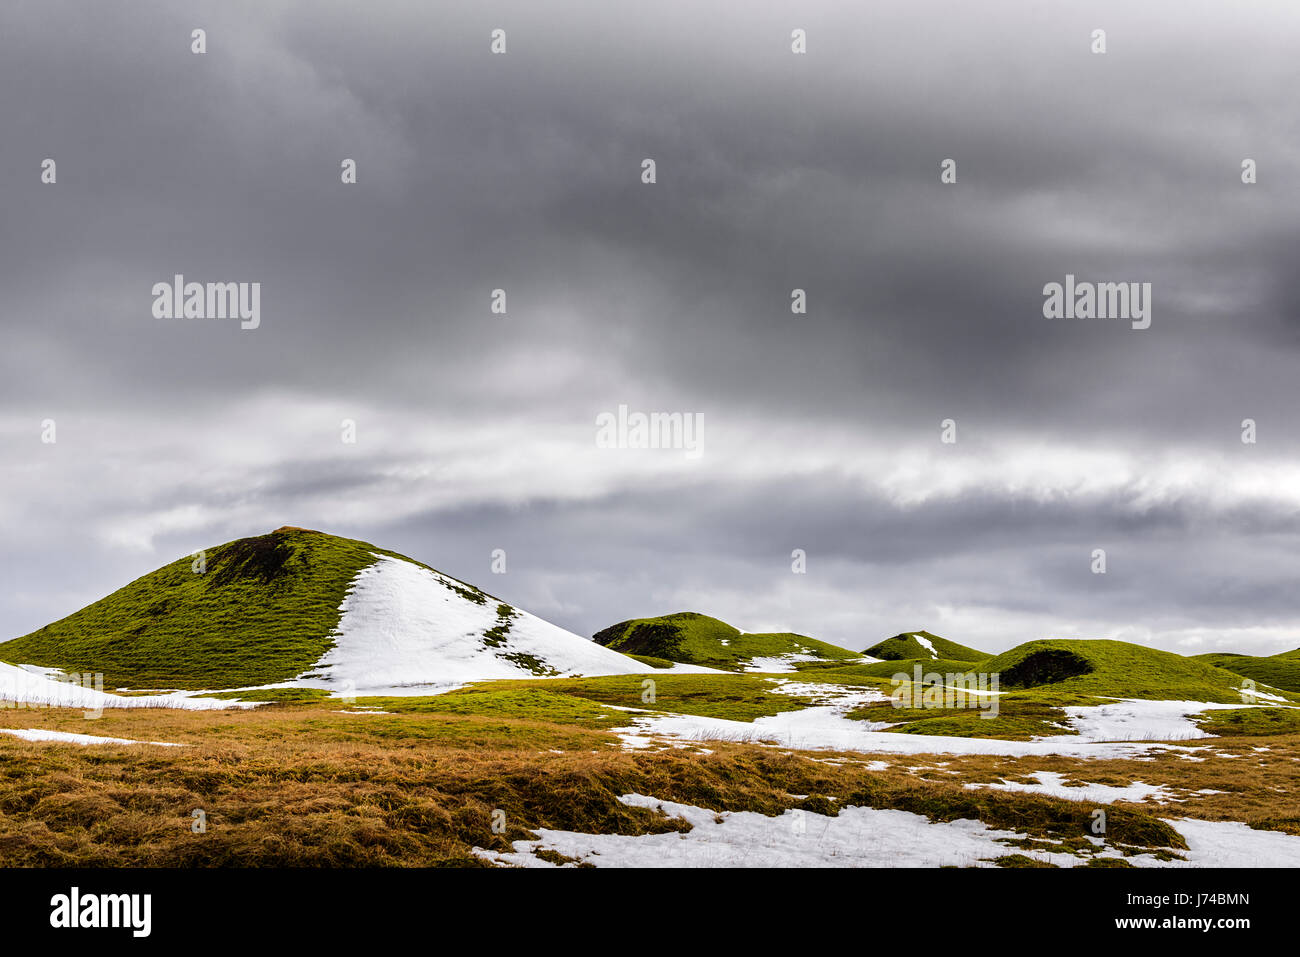 Quando la neve si scioglie l'erba verde cresce sulle basse colline di Islanda. Foto Stock